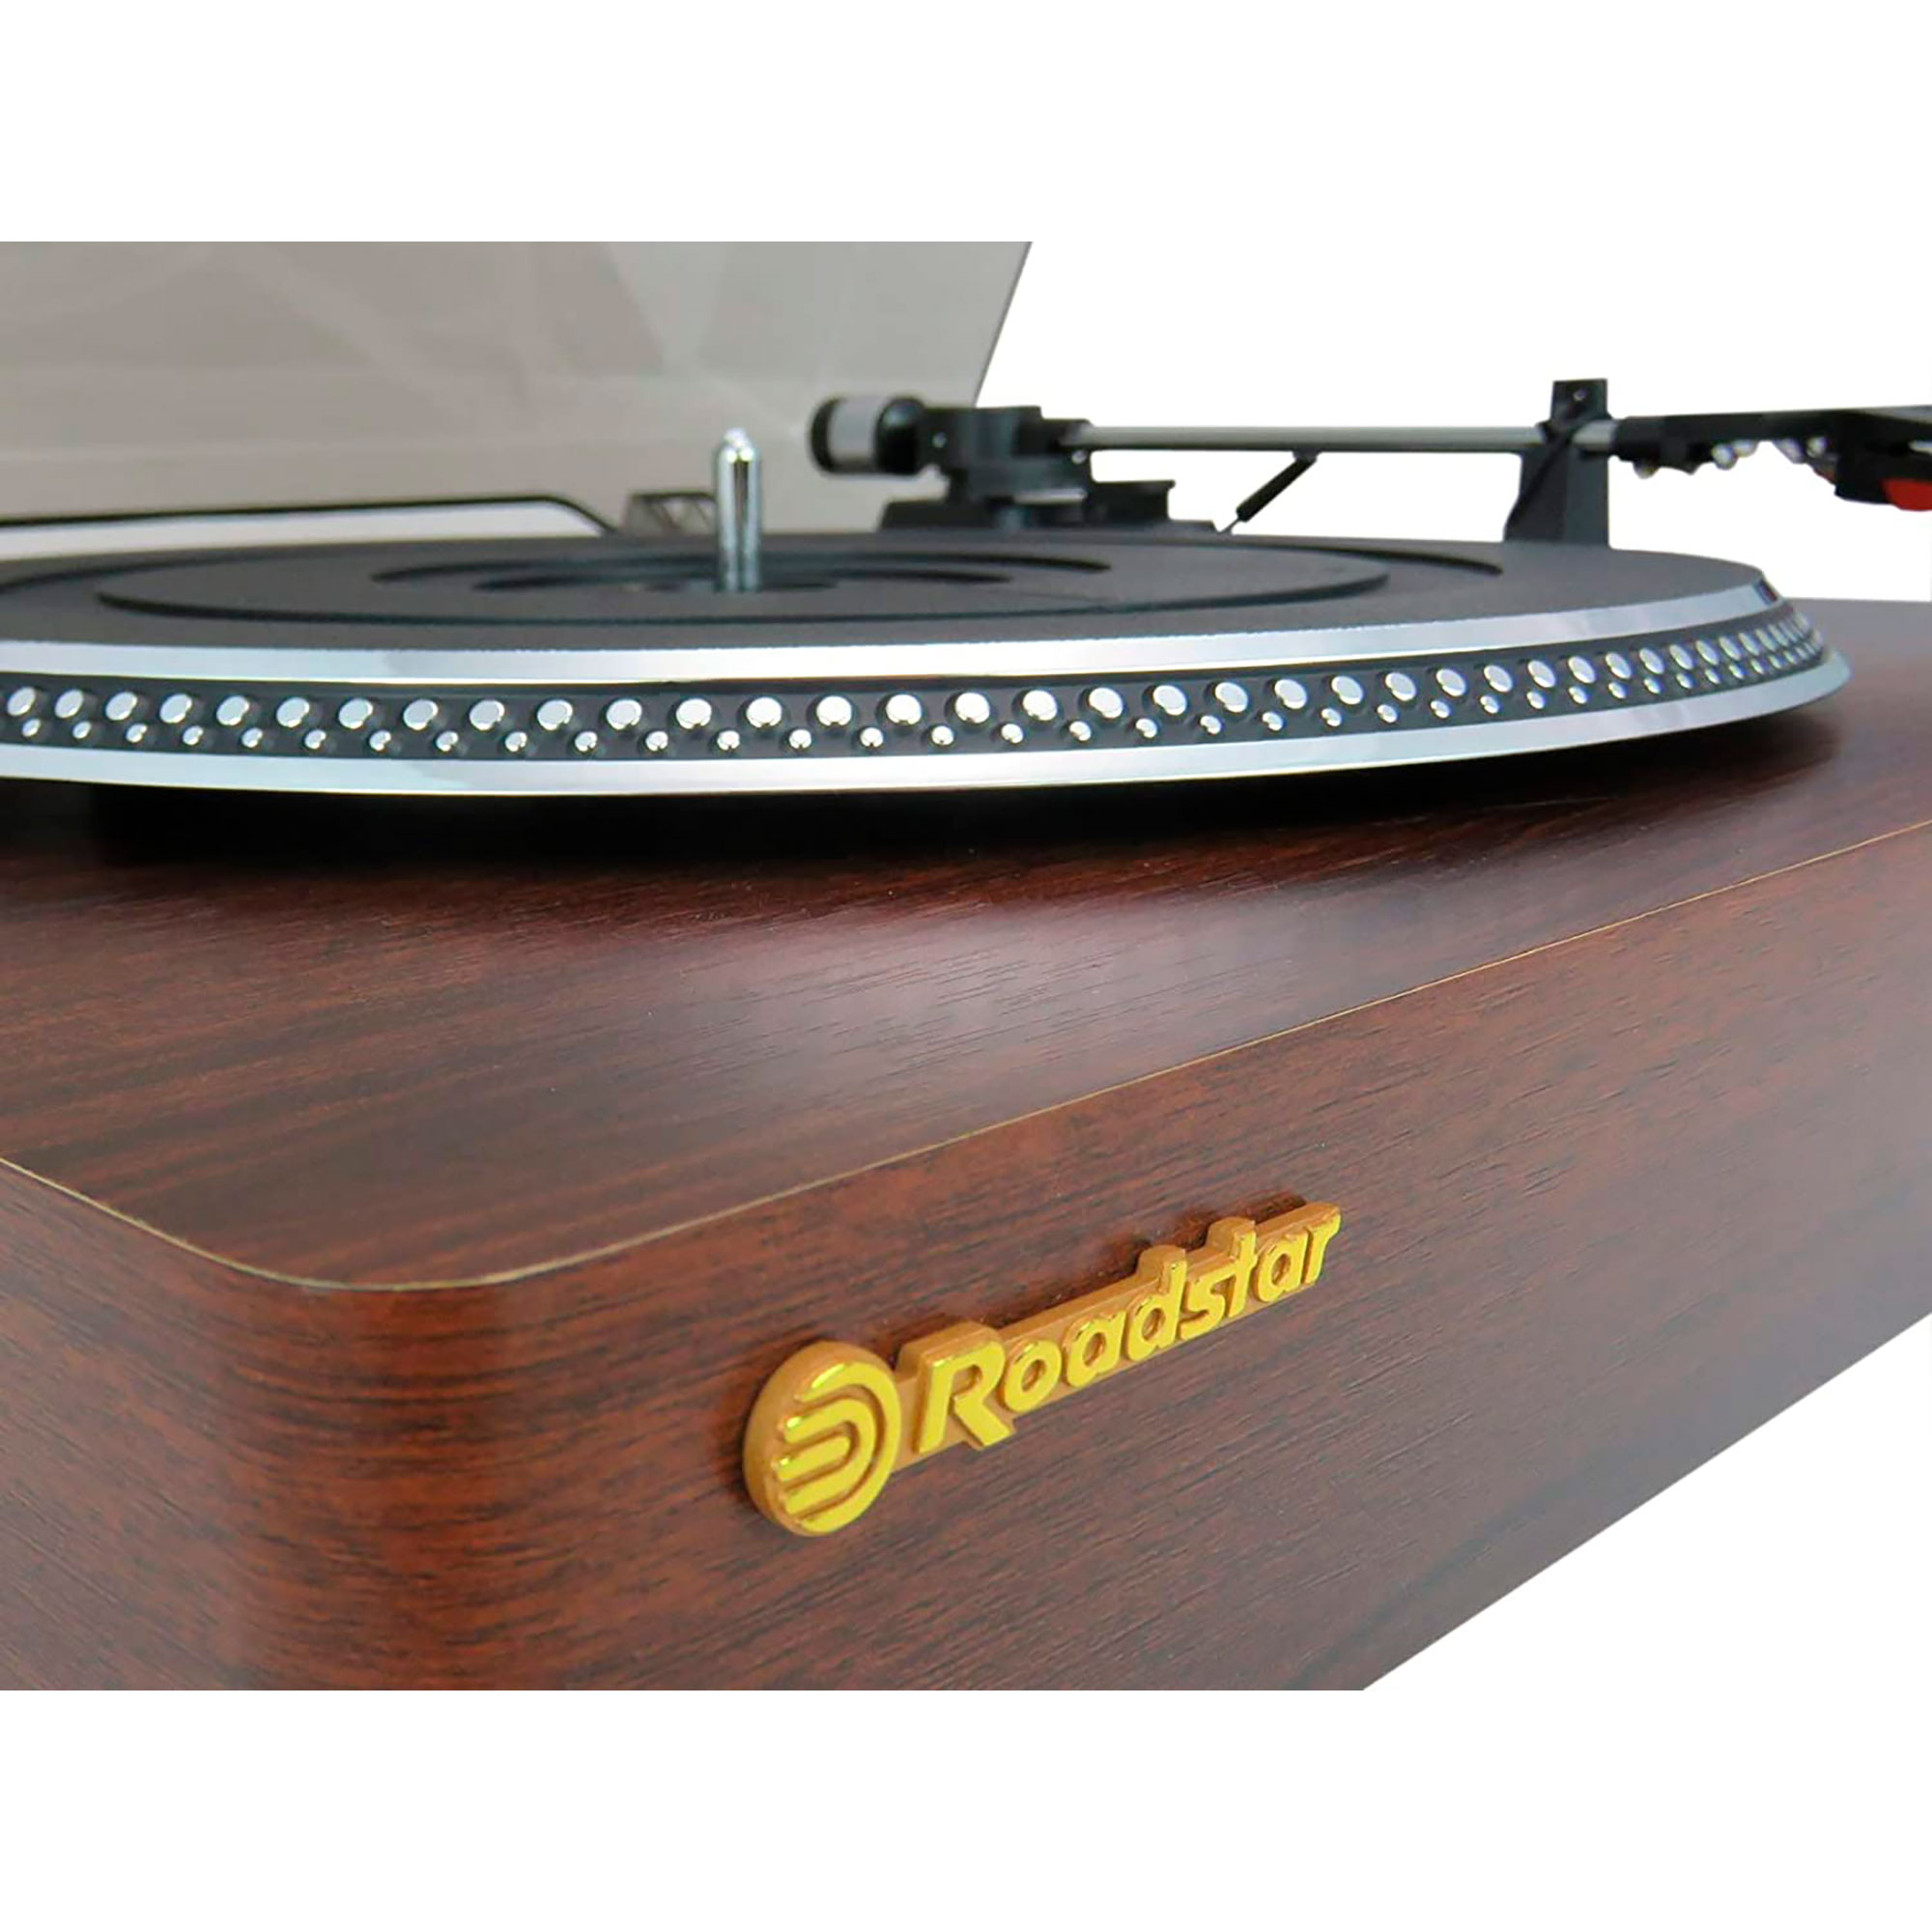 ROADSTAR Retro TT385BTT Vintage Vinyl-Plattenspieler Holz